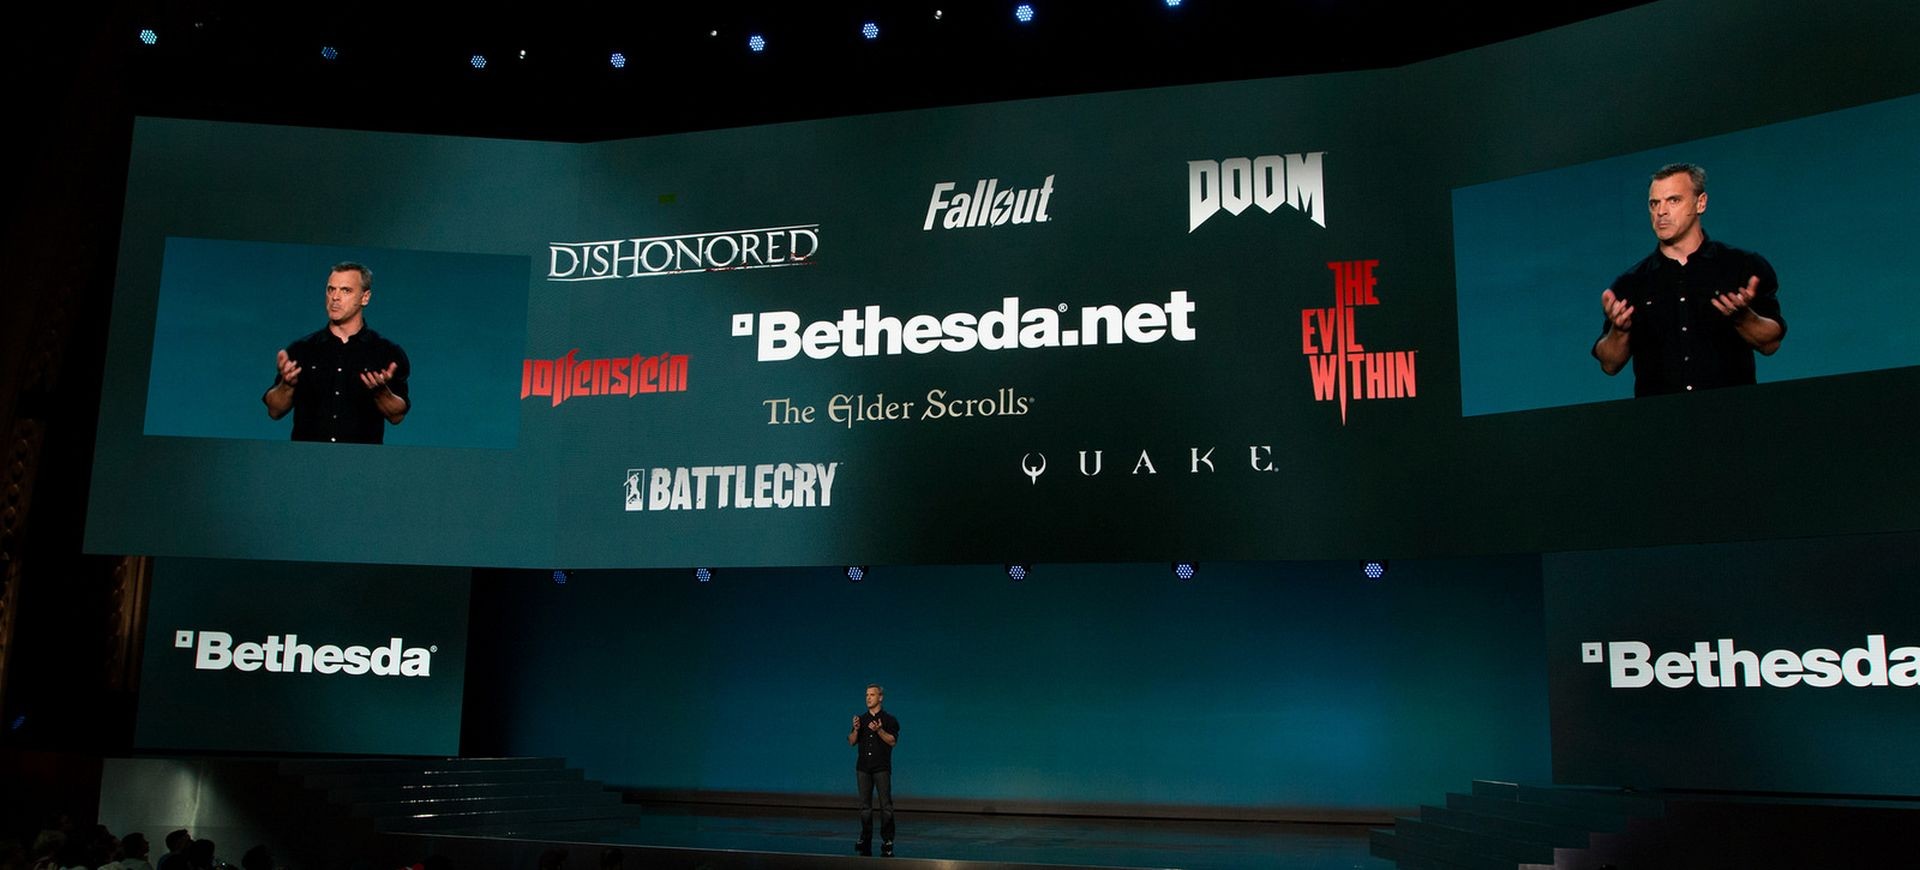 E3 2015: "Bom hạt nhân" của Bethesda Softworks đã nổ!